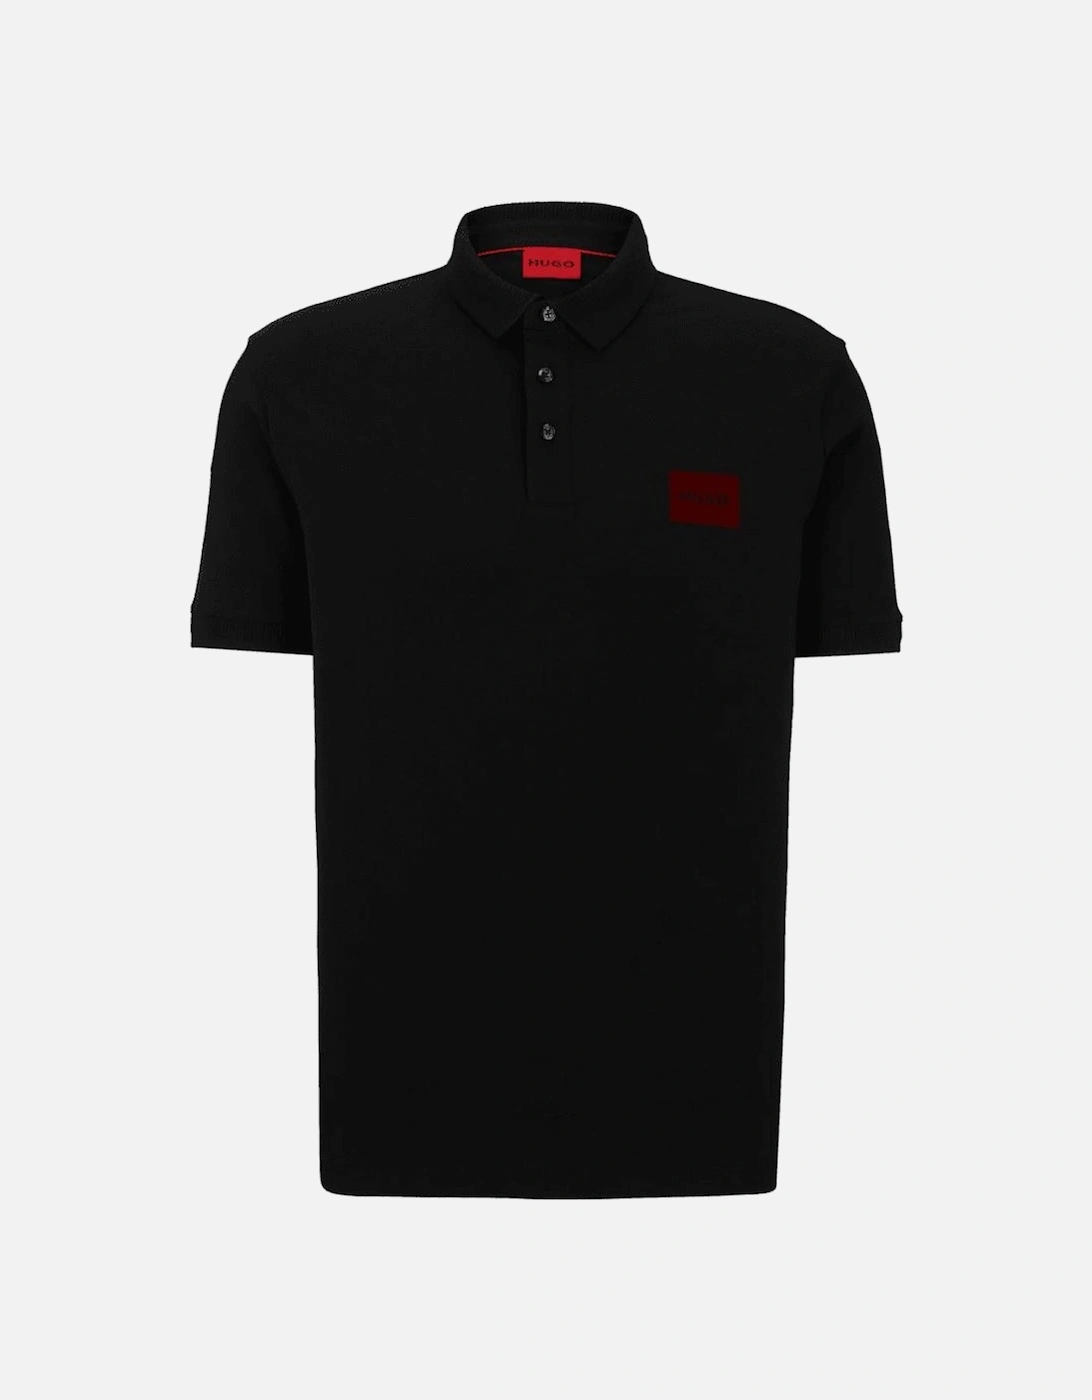 Dereso Metallic Logo Regular Fit Black Polo Shirt, 4 of 3